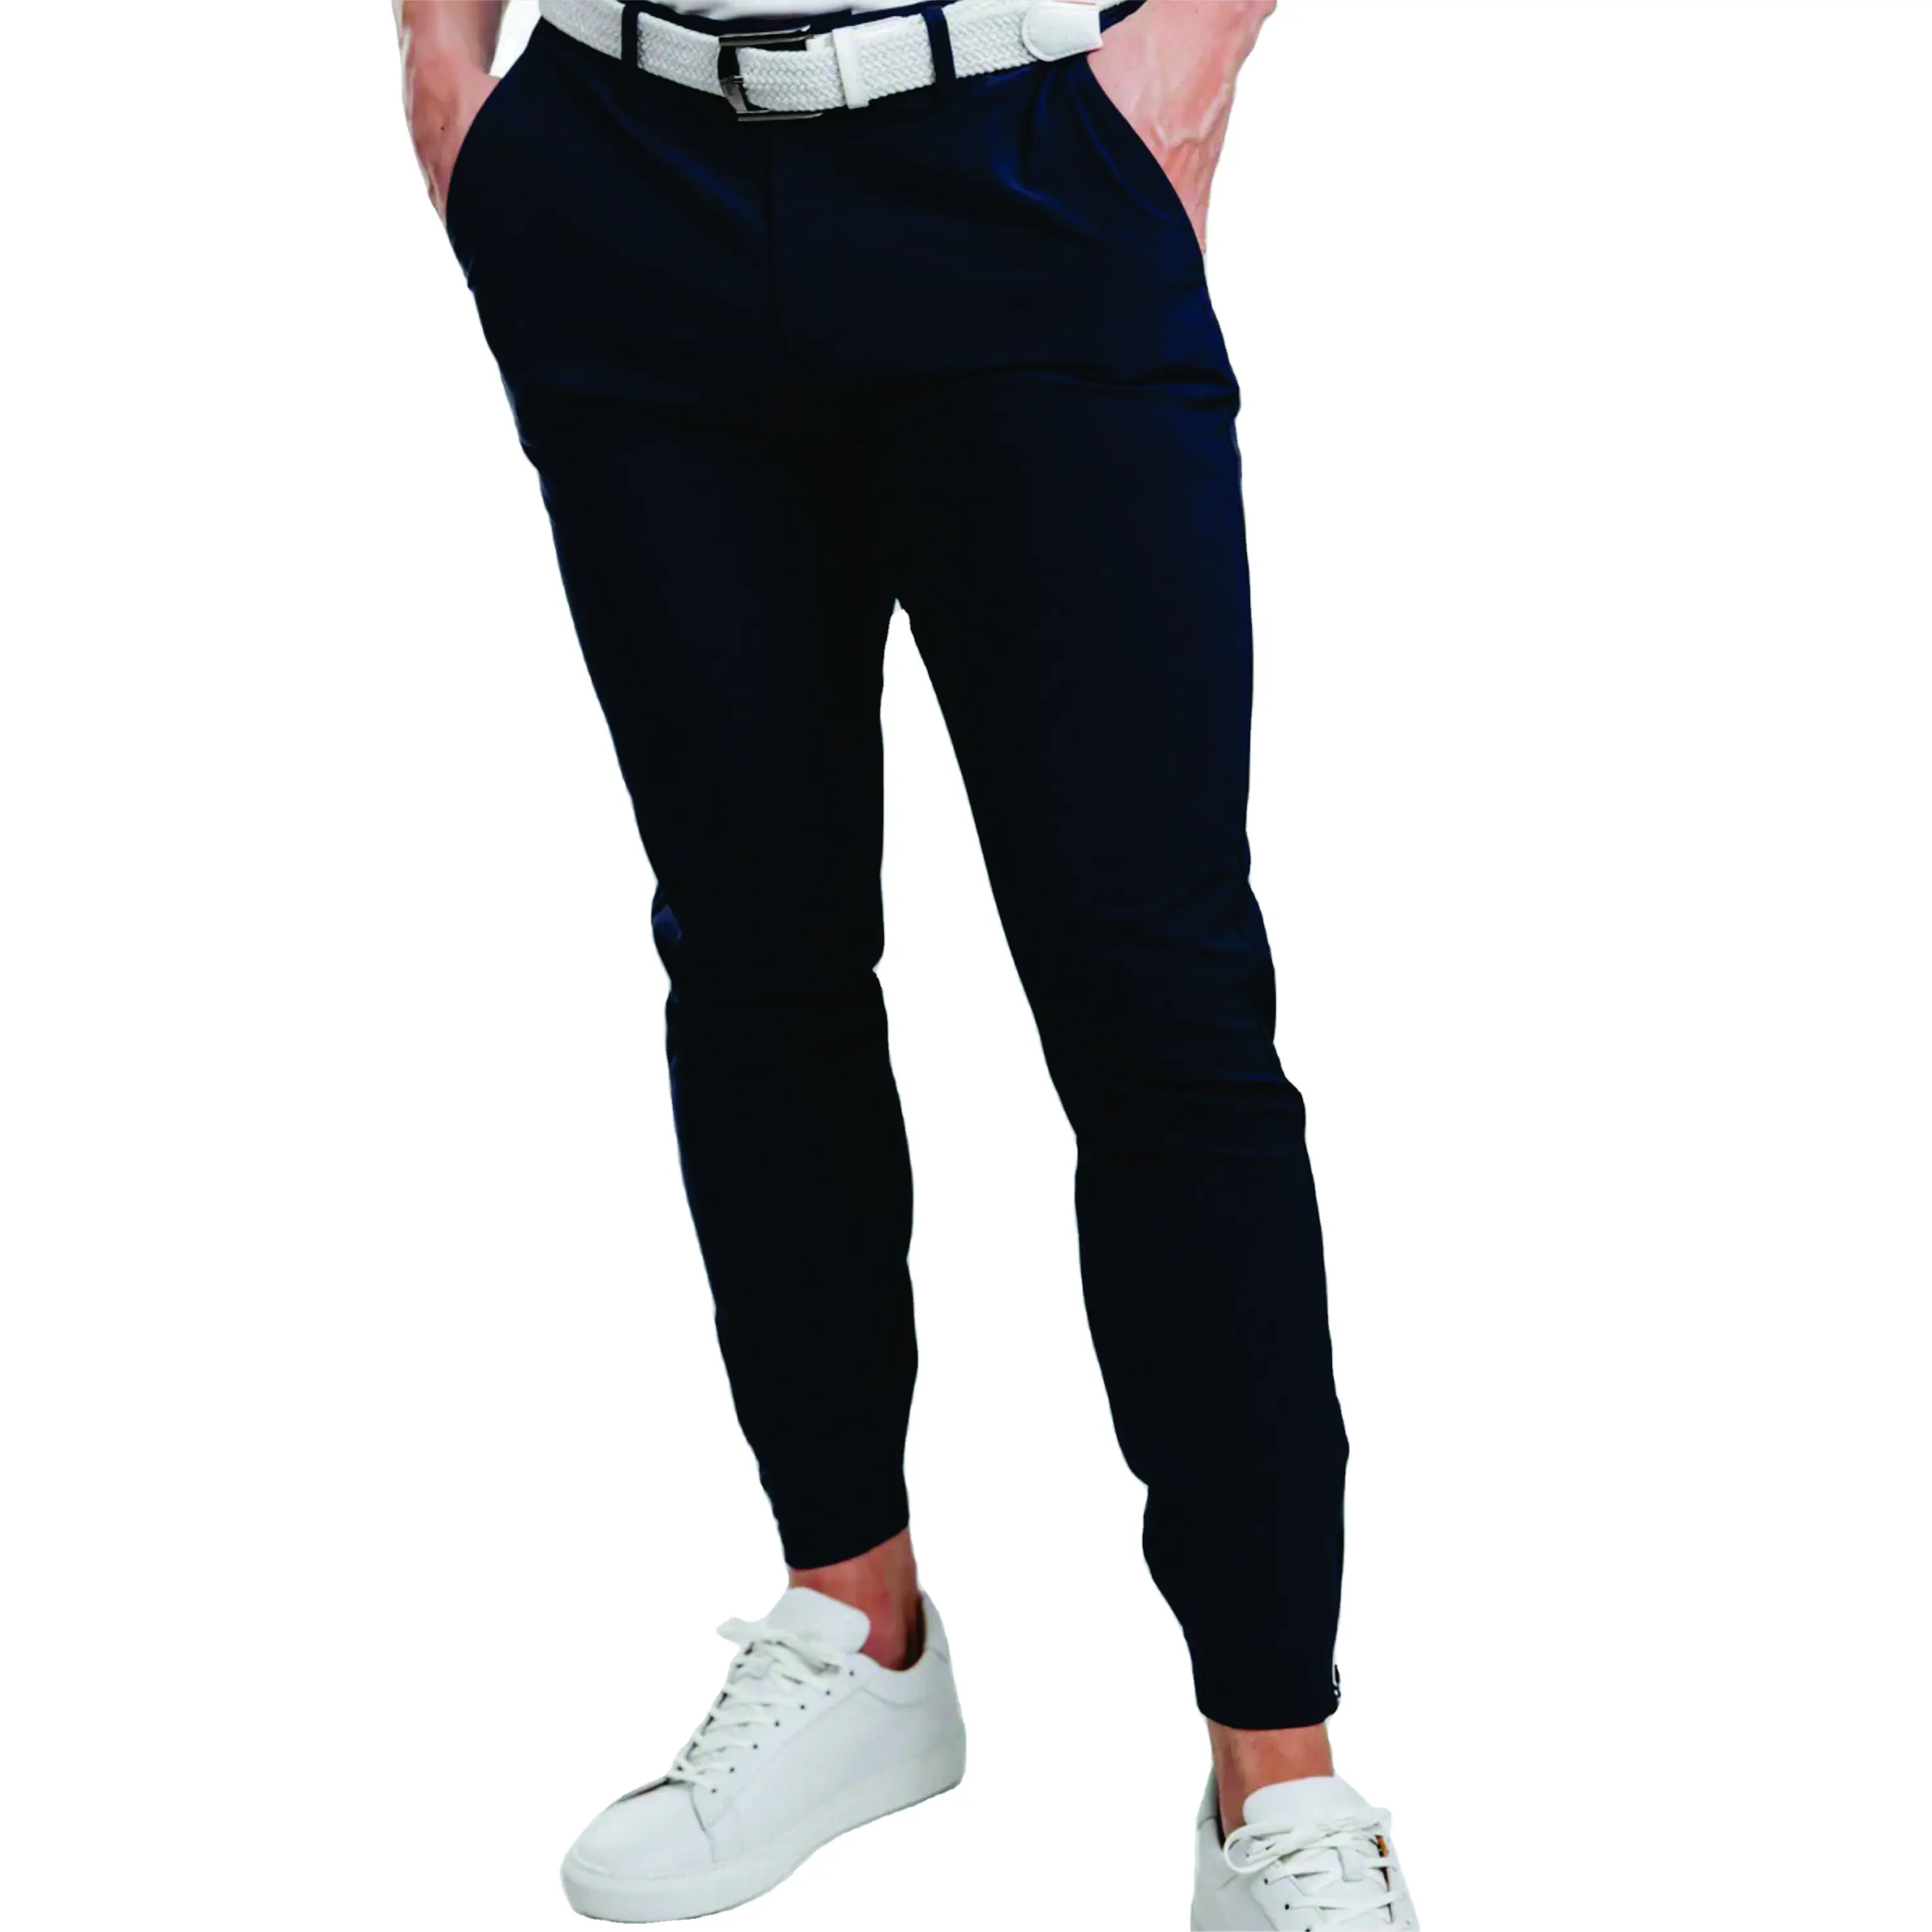 Logotipo personalizado Alta Qualidade Calças Retas Golfe Secagem Rápida Respirável confortável estudantes do ensino Superior uniformes calças